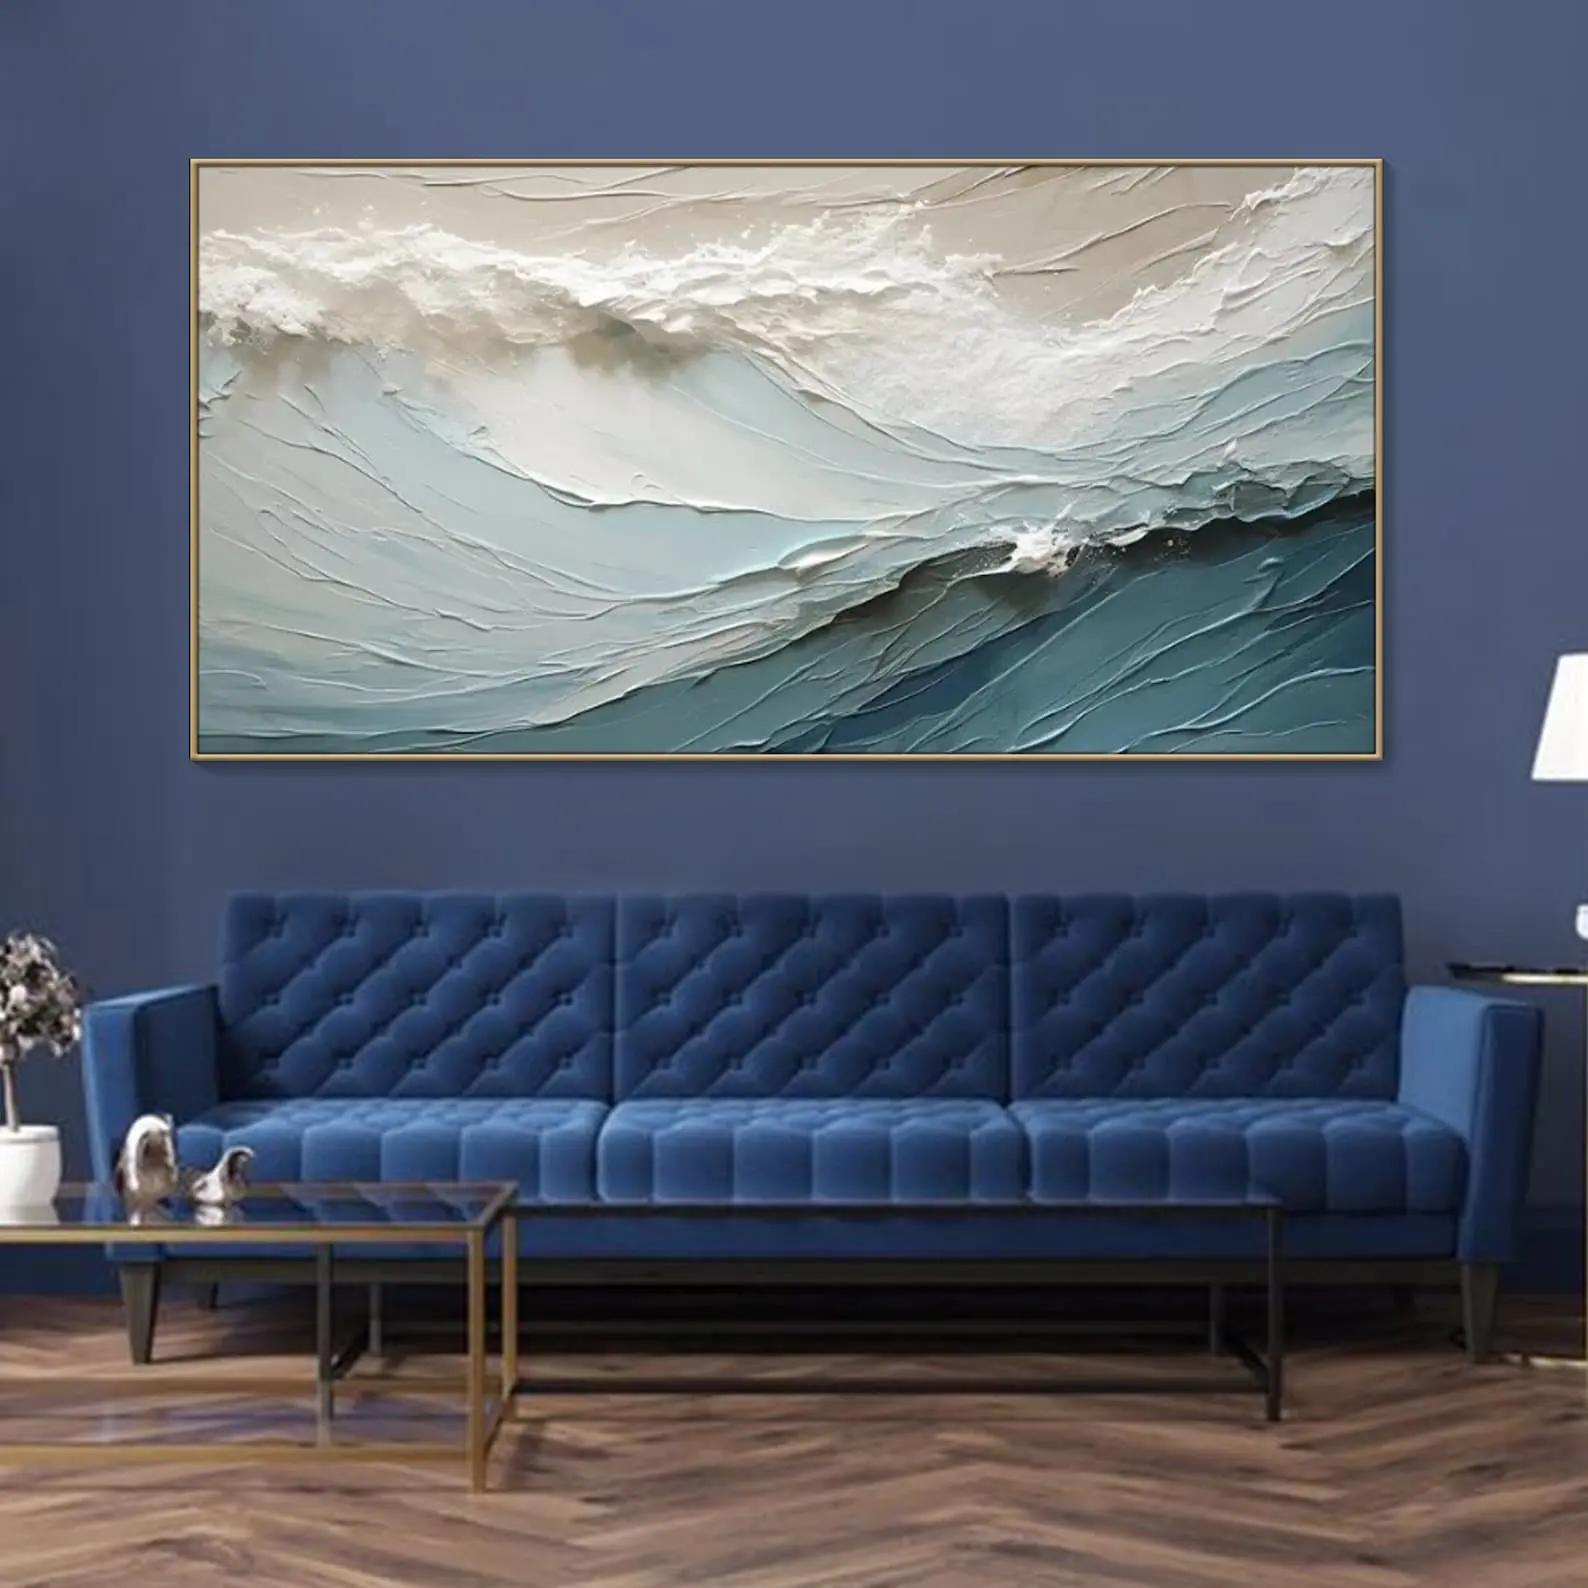 لوحة فنية تجريدية ثلاثية الأبعاد بألوان تقليدية من القماش بألوان زيتية تجريدية لتزيين غرفة النوم مرسوم عليها موجات موجات المحيط الأزرق مرسوم عليها أحجار رملية